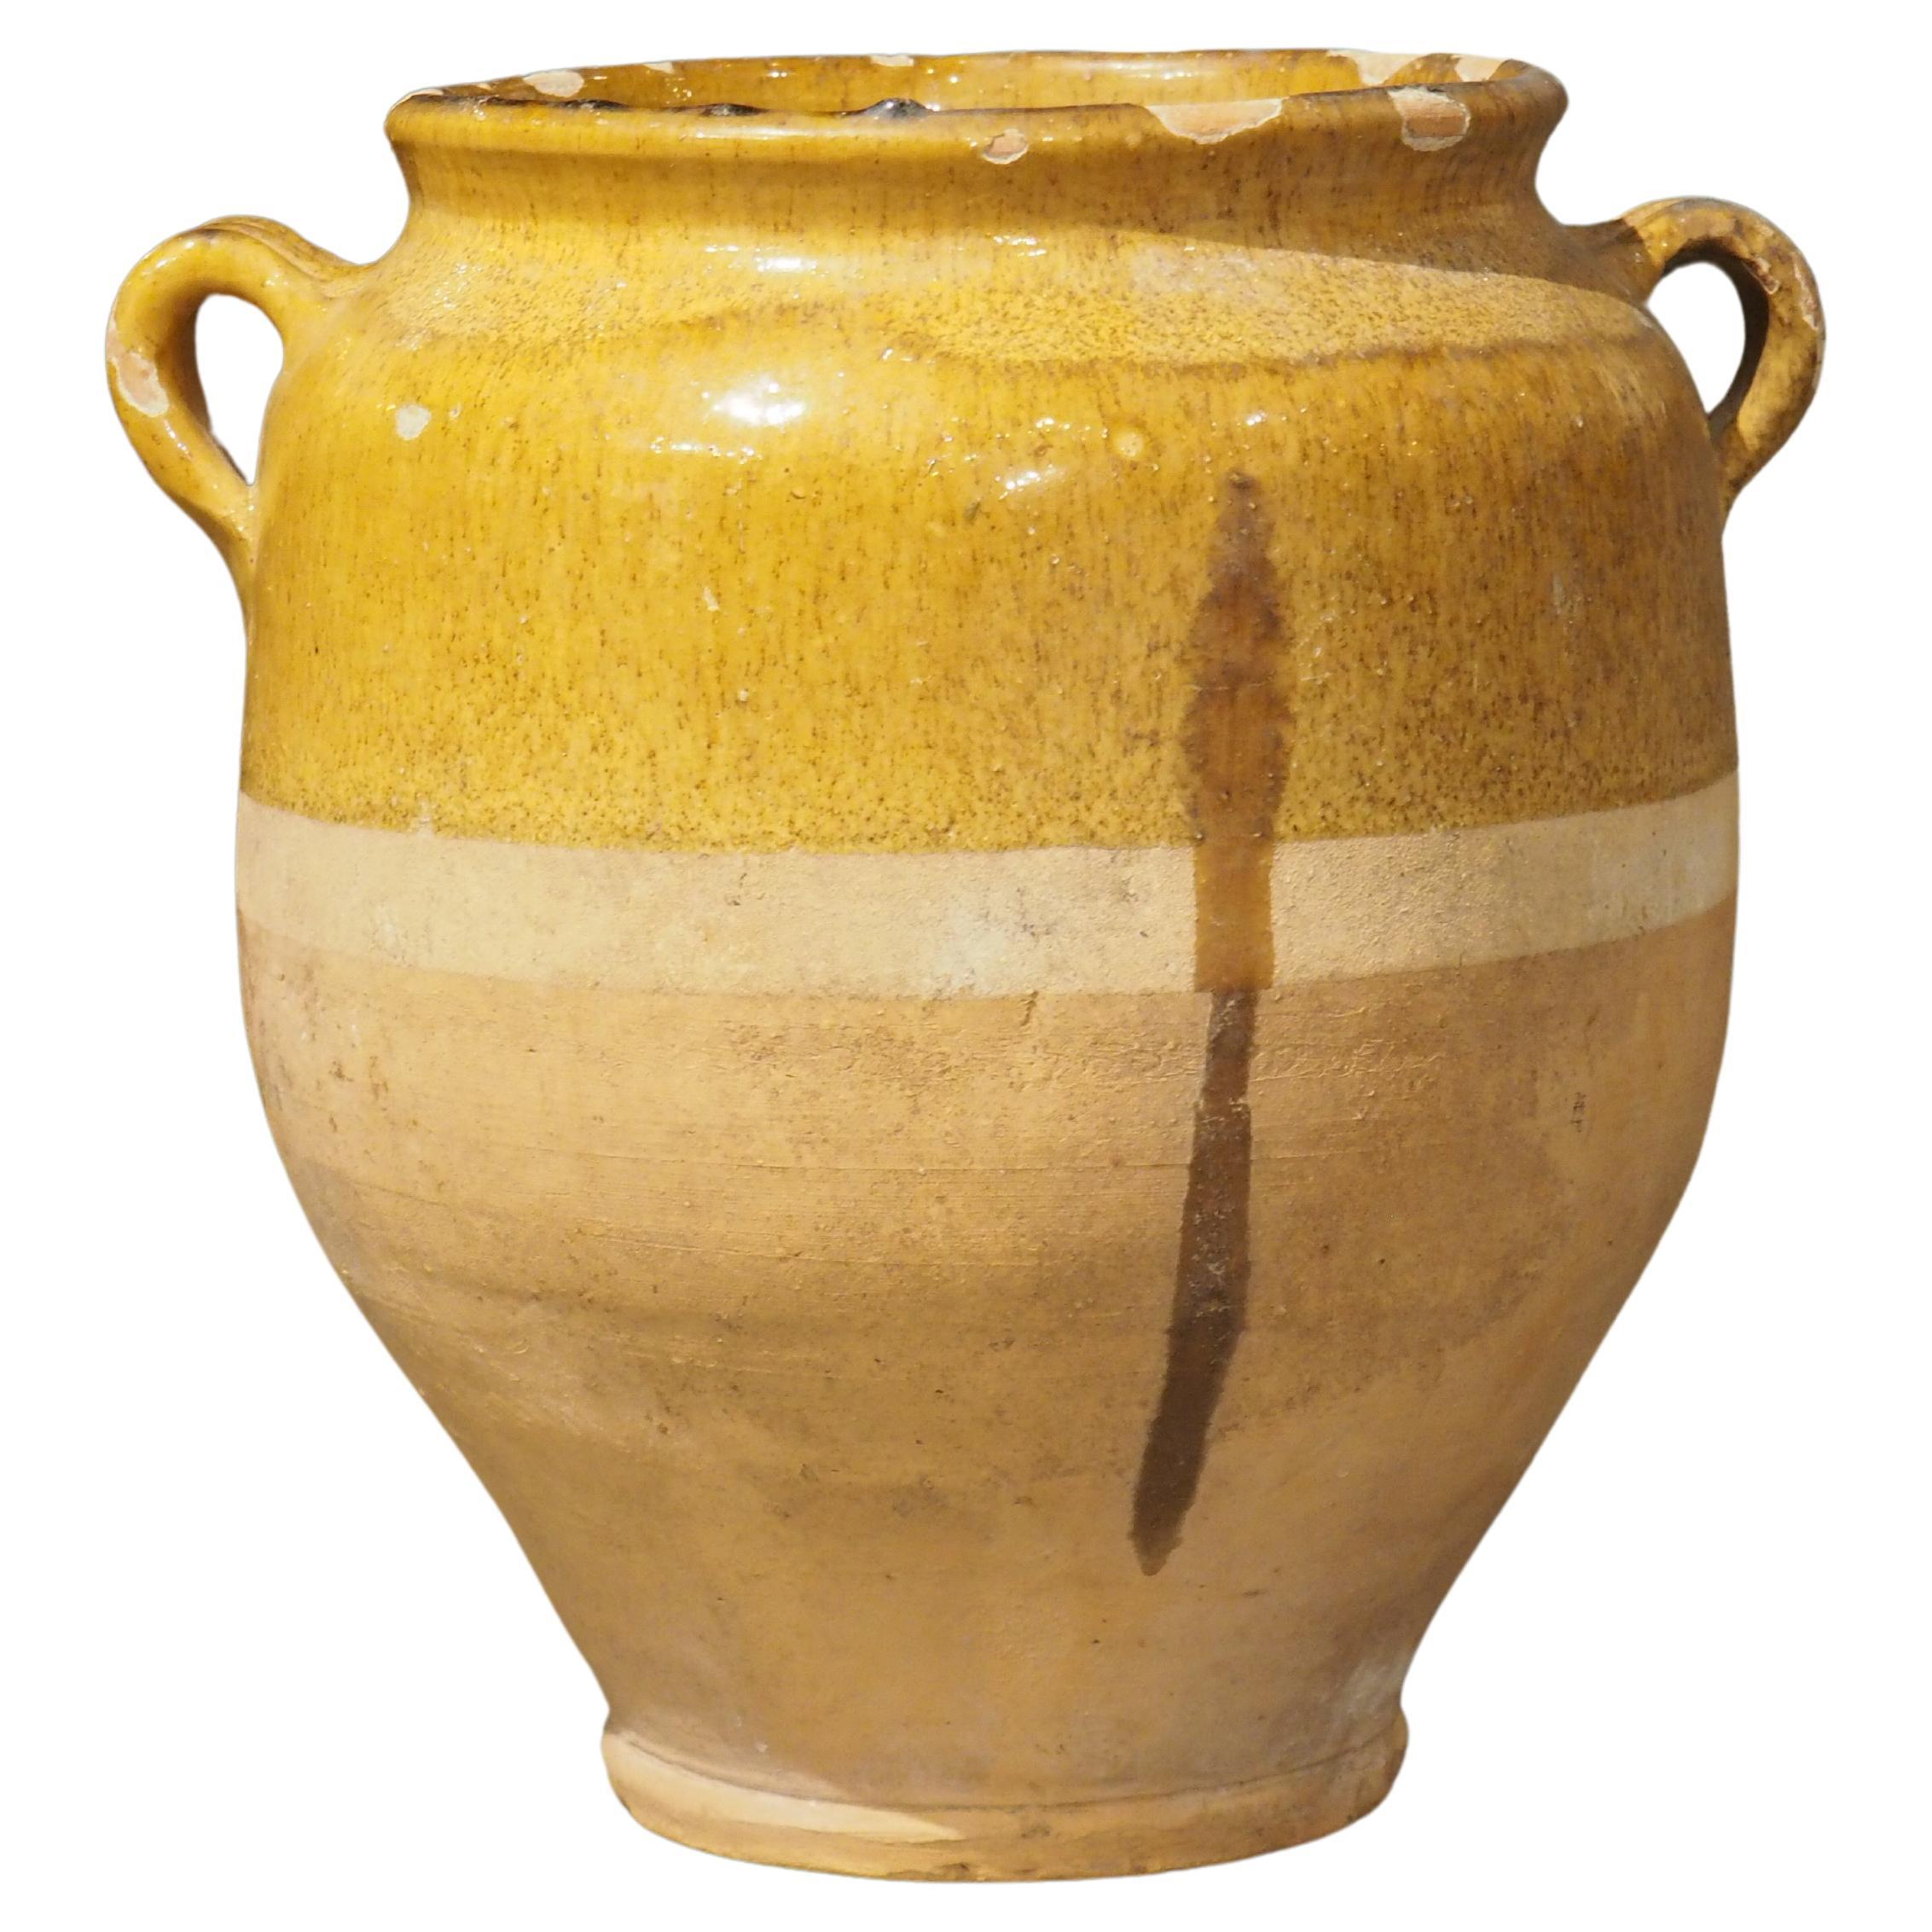 Pot à confit ancien du sud-ouest de la France